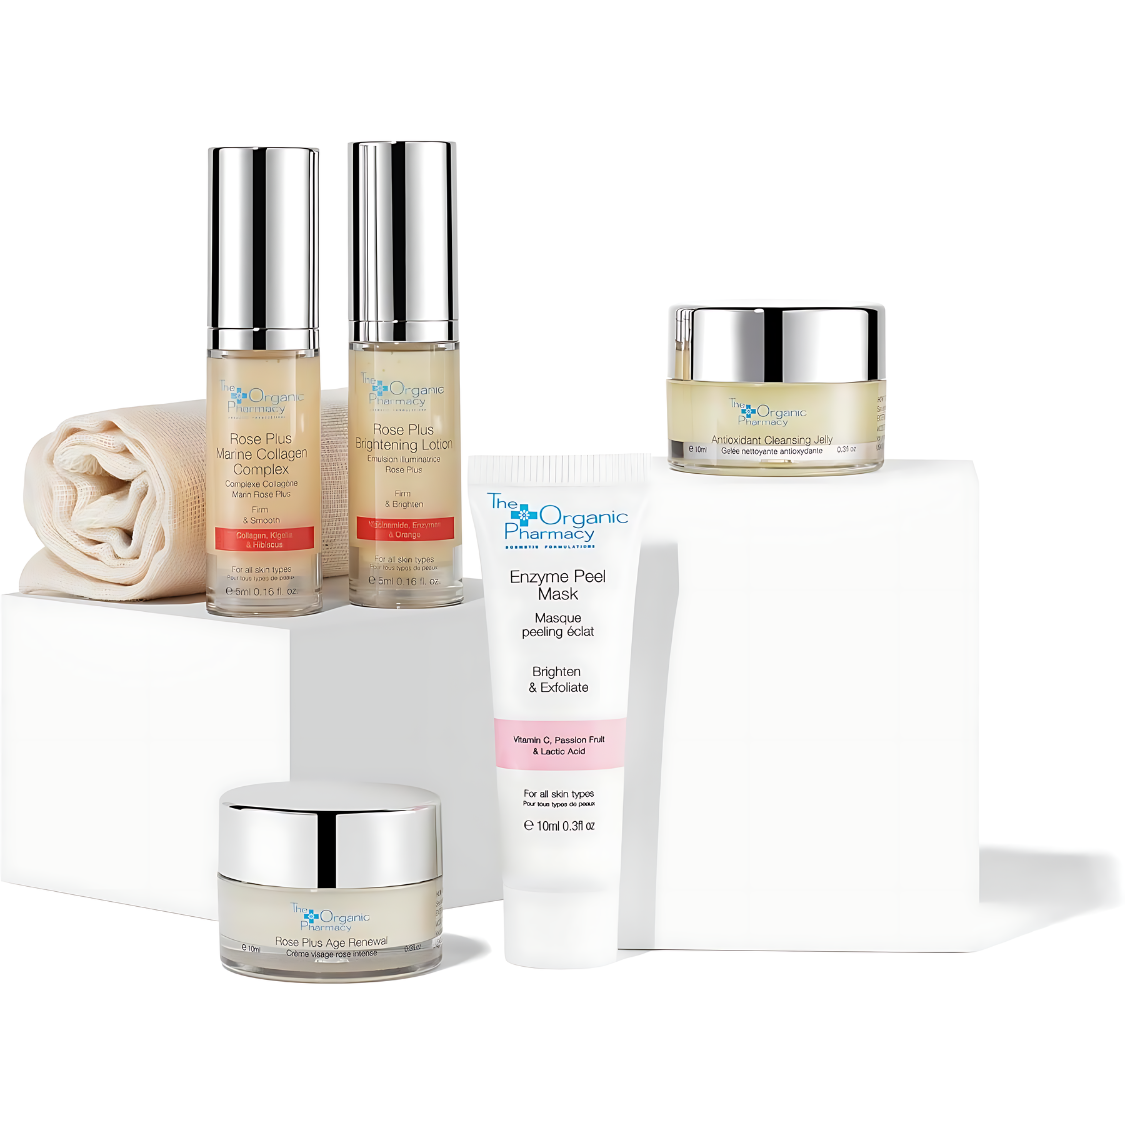 Organic Skin Care Gift Set